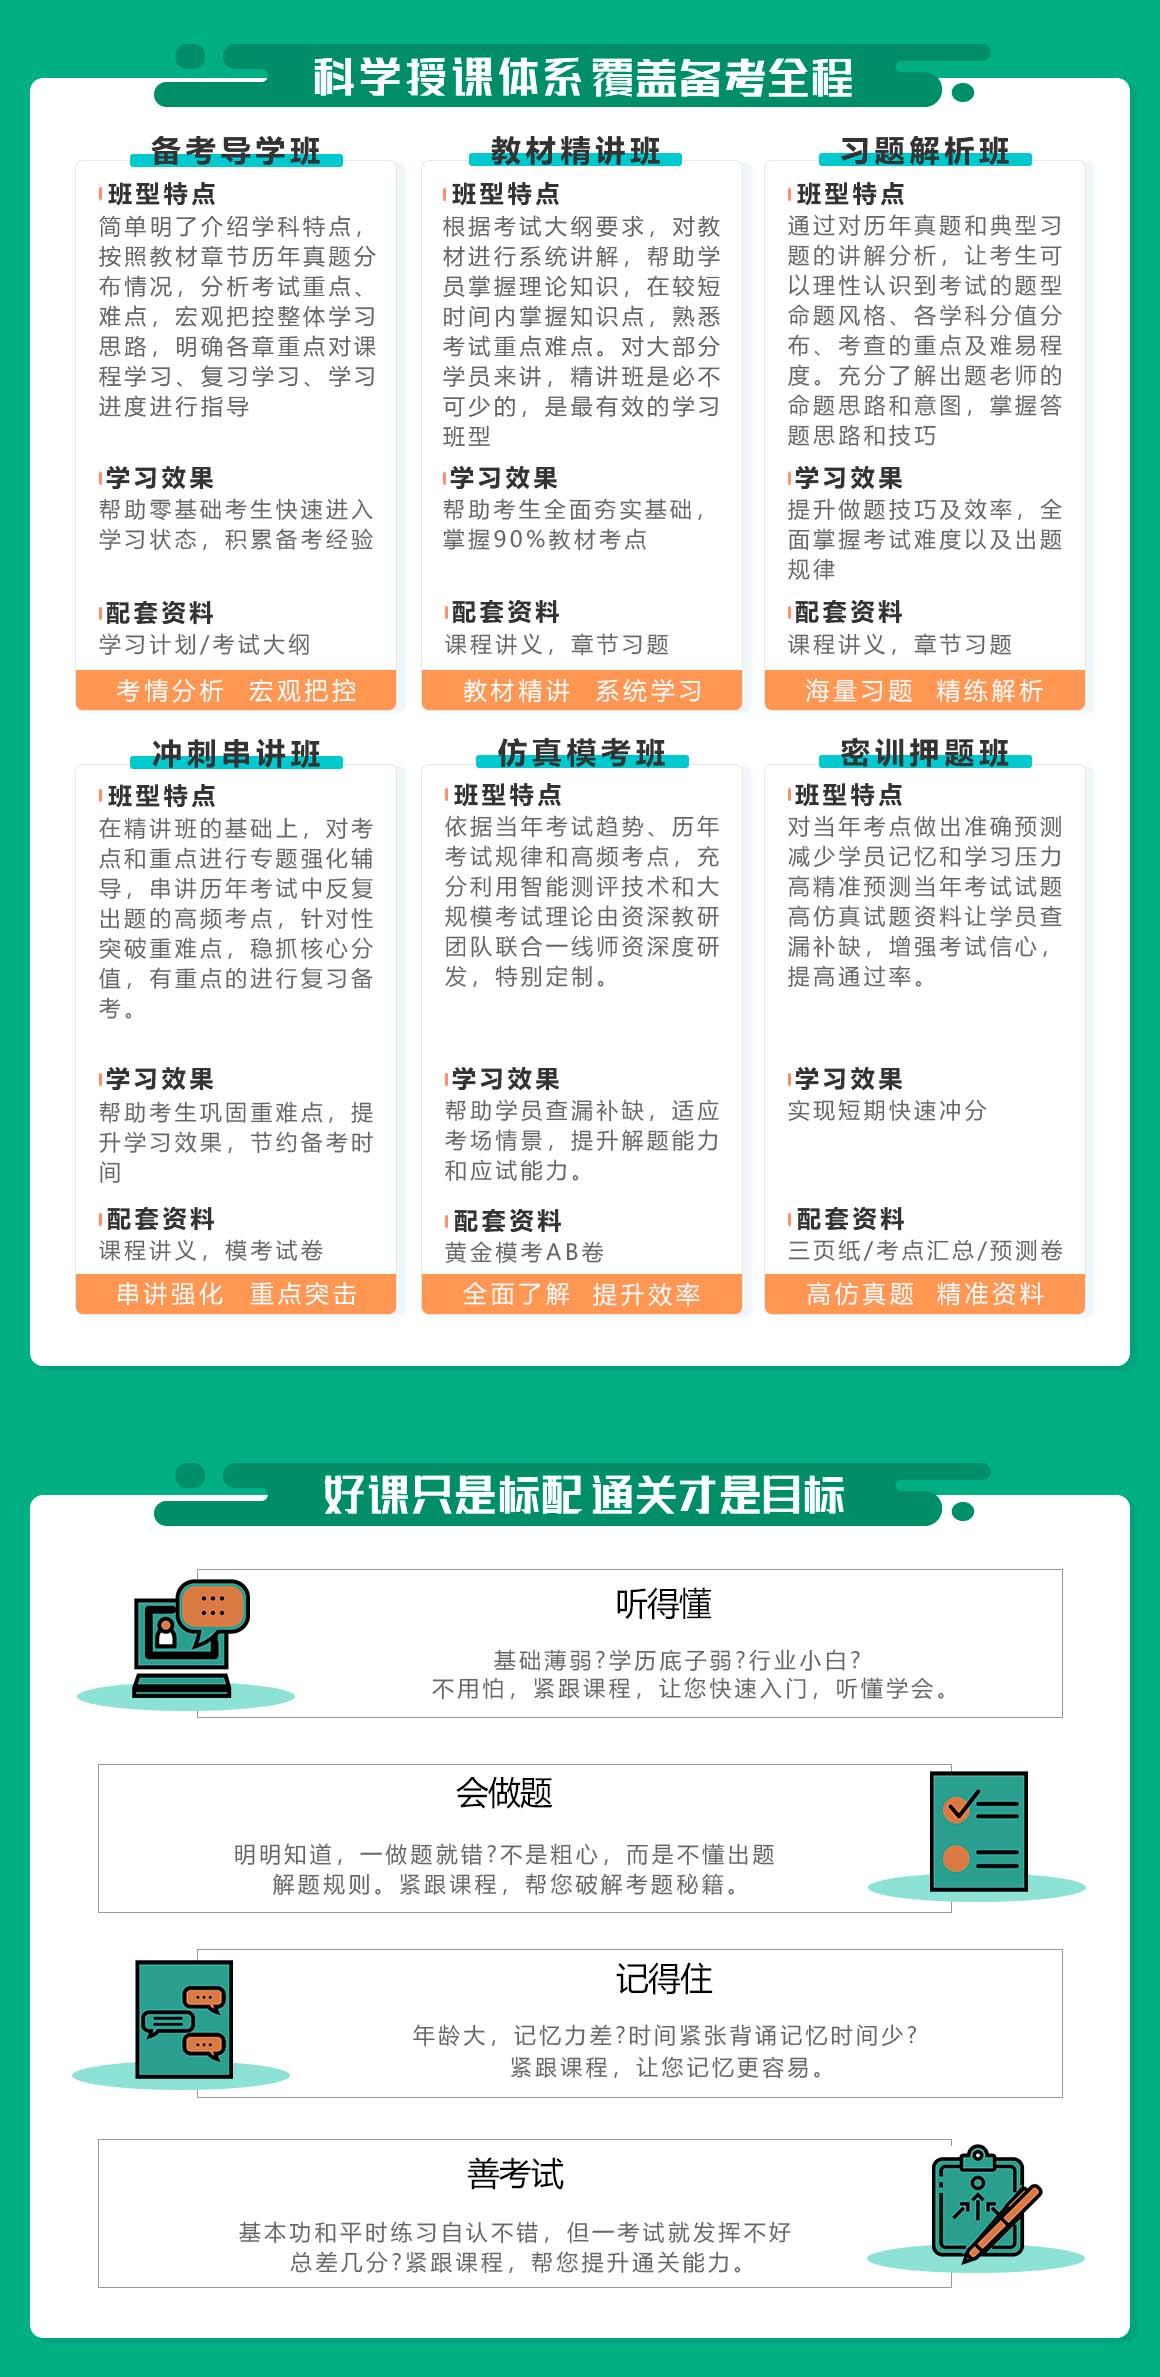 上海注册会计师培训课程